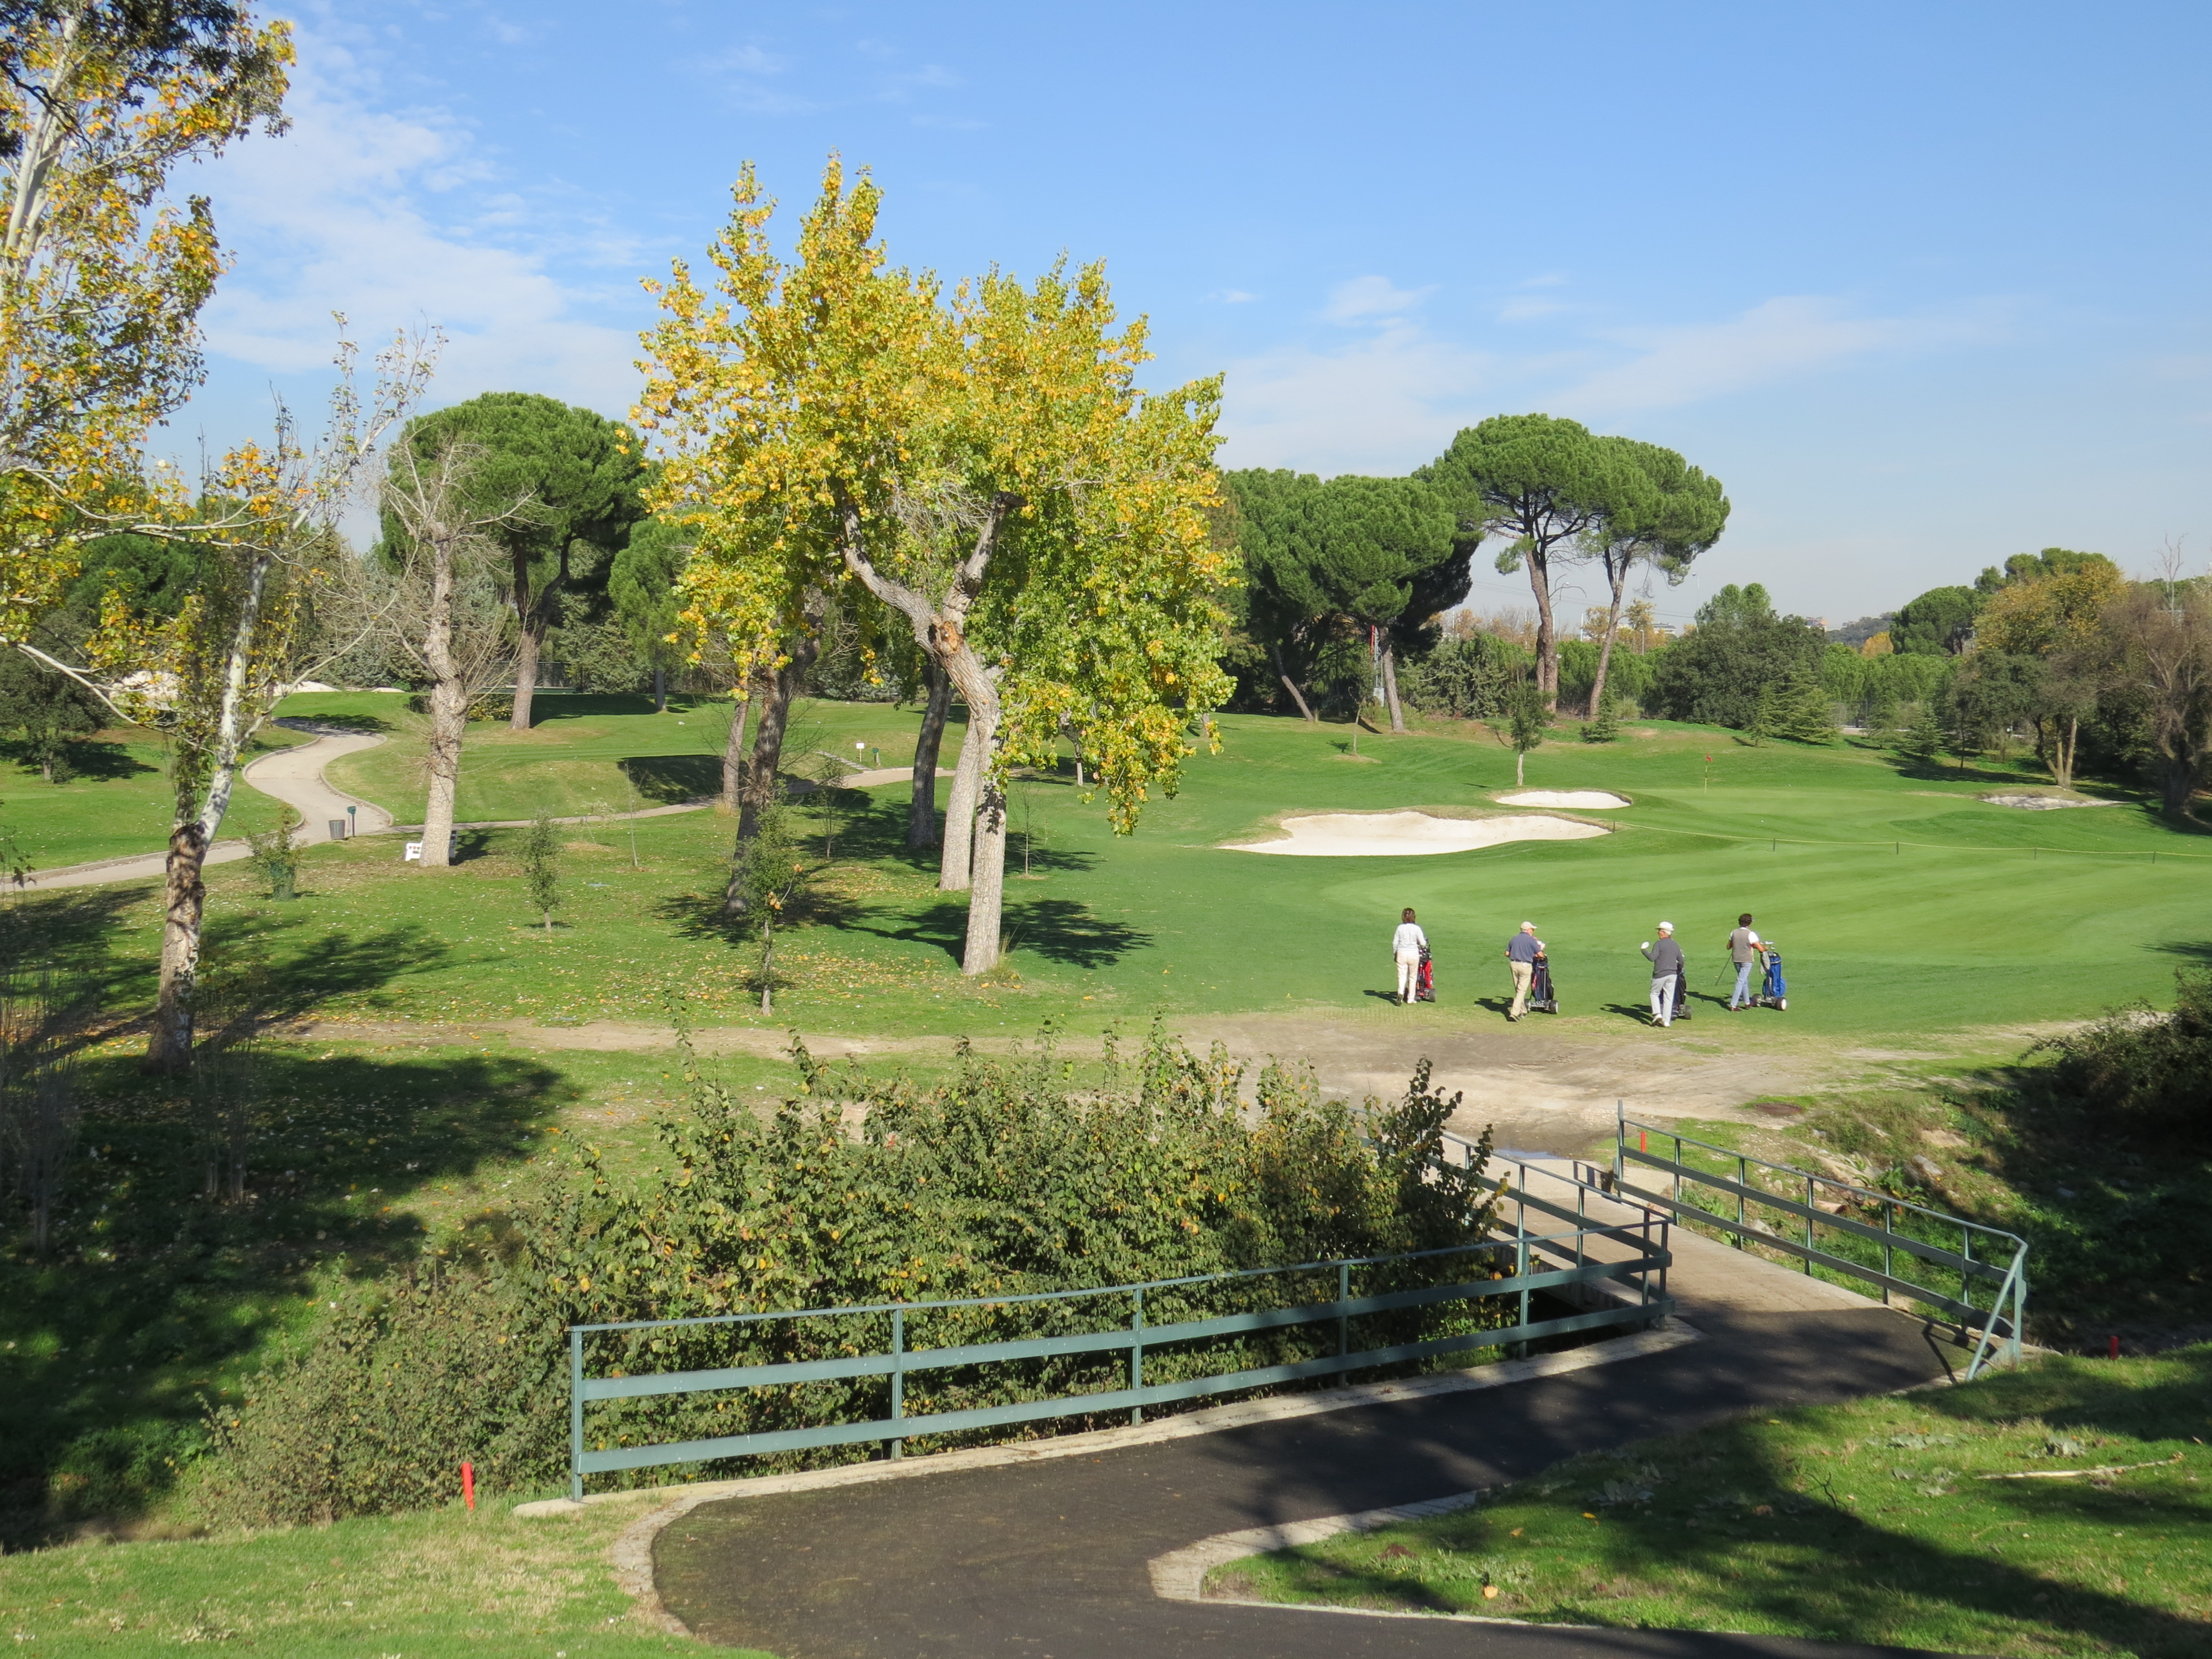 Campo de golf del Club de Campo Villa de Madrid. Foto: Miguel Ros / CCVM